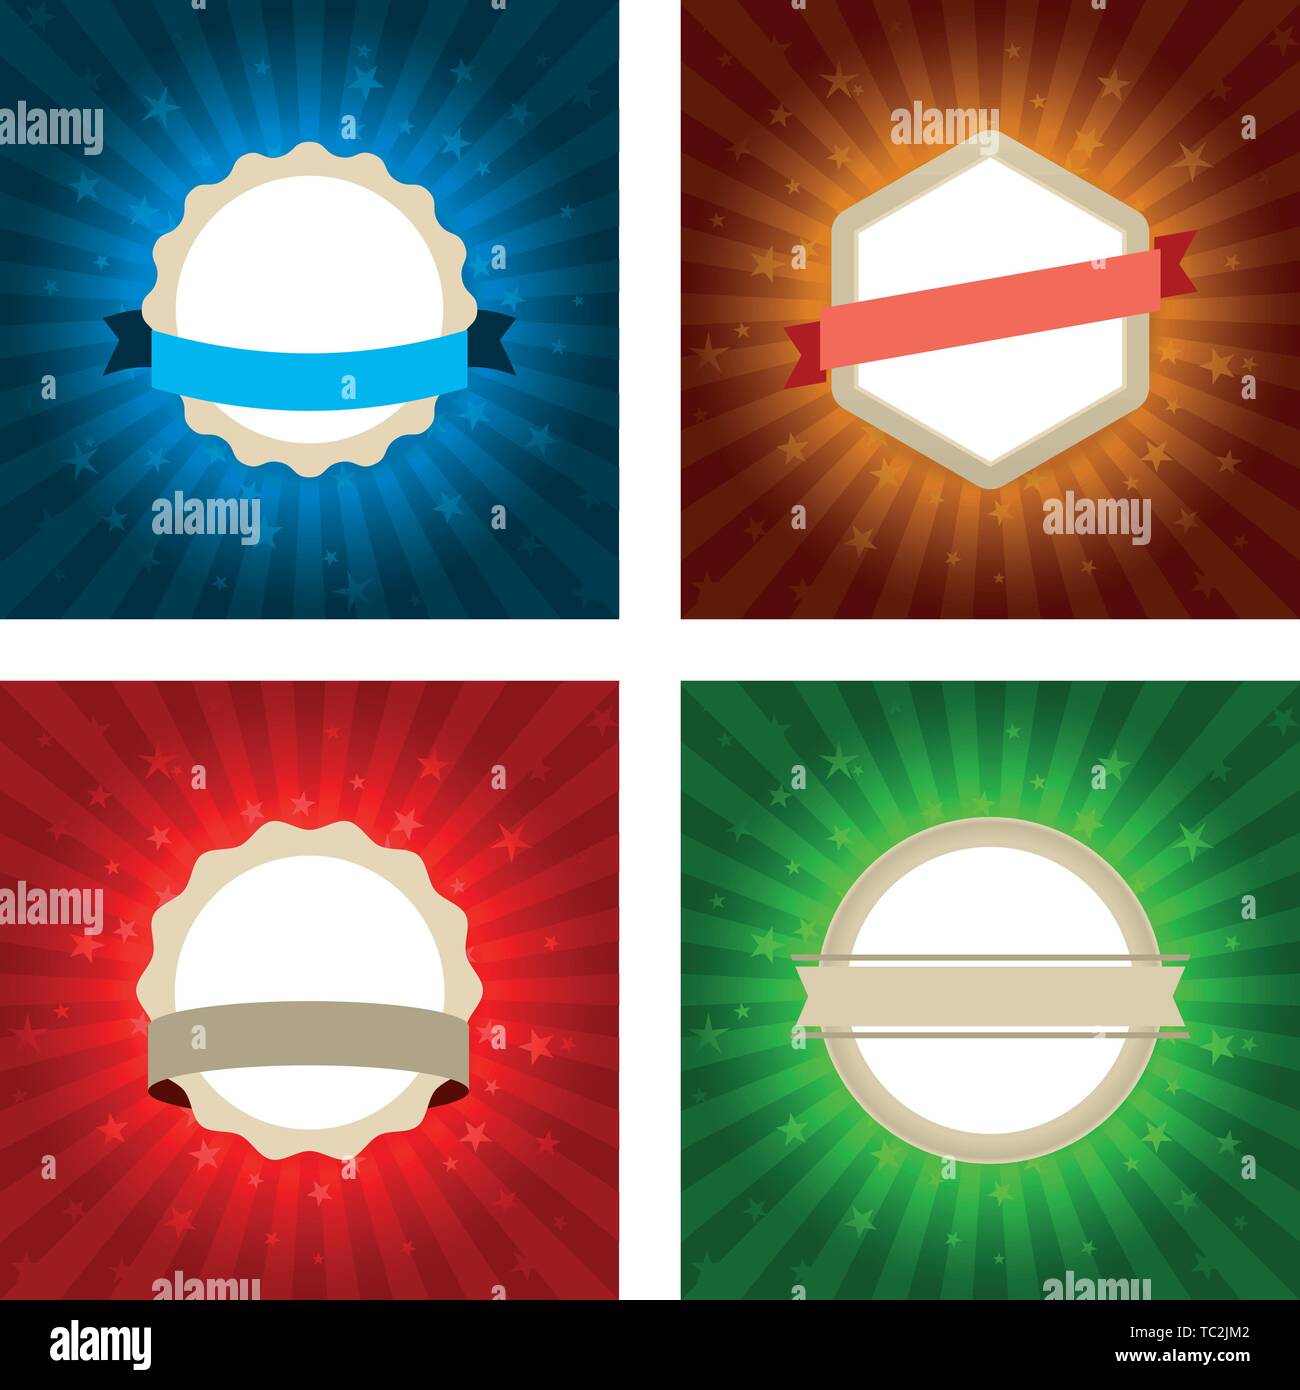 Illustrazione Vettoriale. Quattro shiny badge geometrico con nastri in diversi colori. Illustrazione Vettoriale